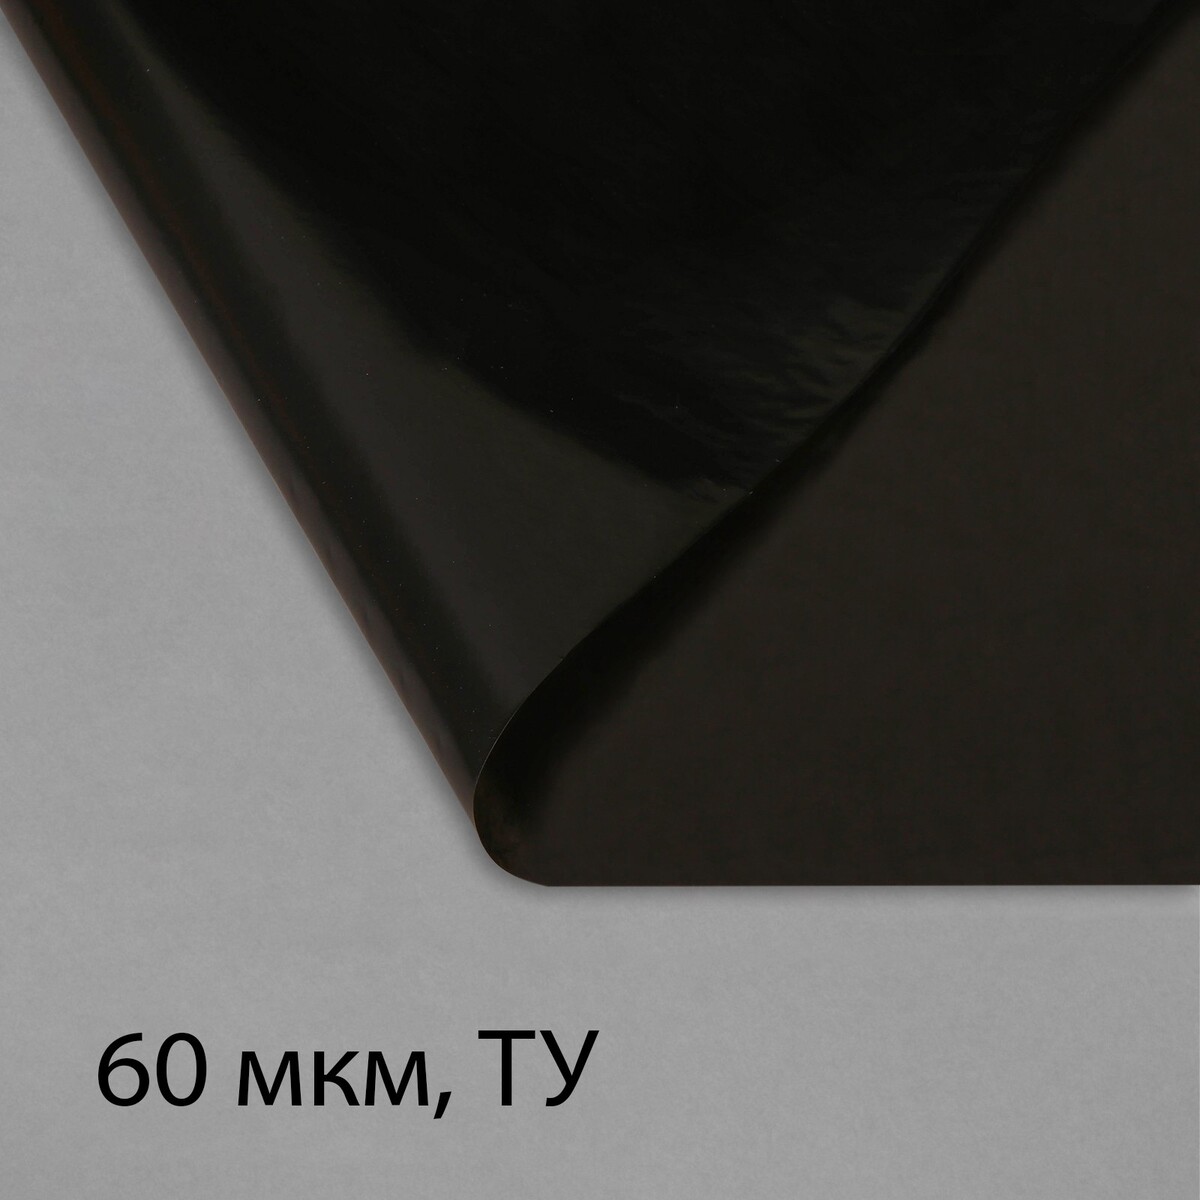 Пленка полиэтиленовая, техническая, 60 мкм, черная, длина 10 м, ширина 3 м, рукав (1.5 м × 2), эконом 50% пленка полиэтиленовая техническая 80 мкм черная длина 10 м ширина 3 м рукав 1 5 × 2 м эконом 50%